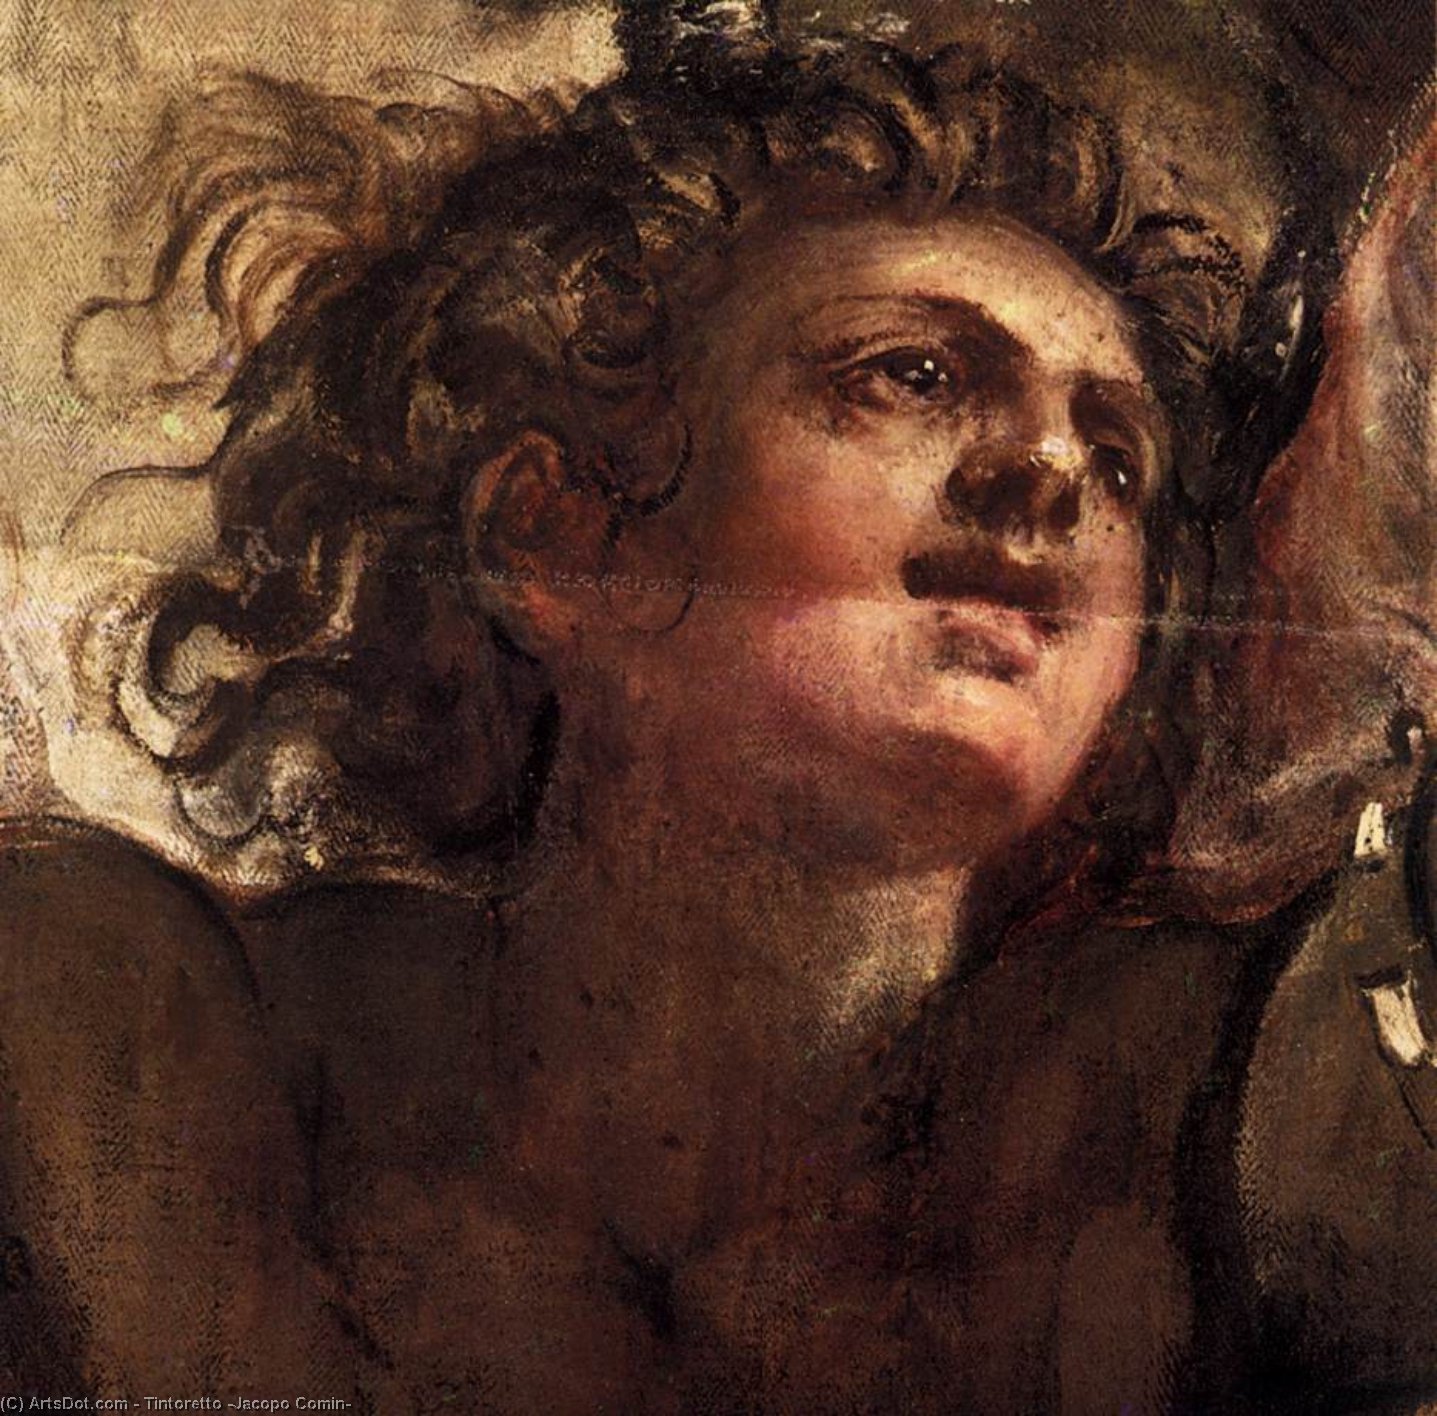 Wikoo.org - موسوعة الفنون الجميلة - اللوحة، العمل الفني Tintoretto (Jacopo Comin) - The Temptation of Christ (detail)